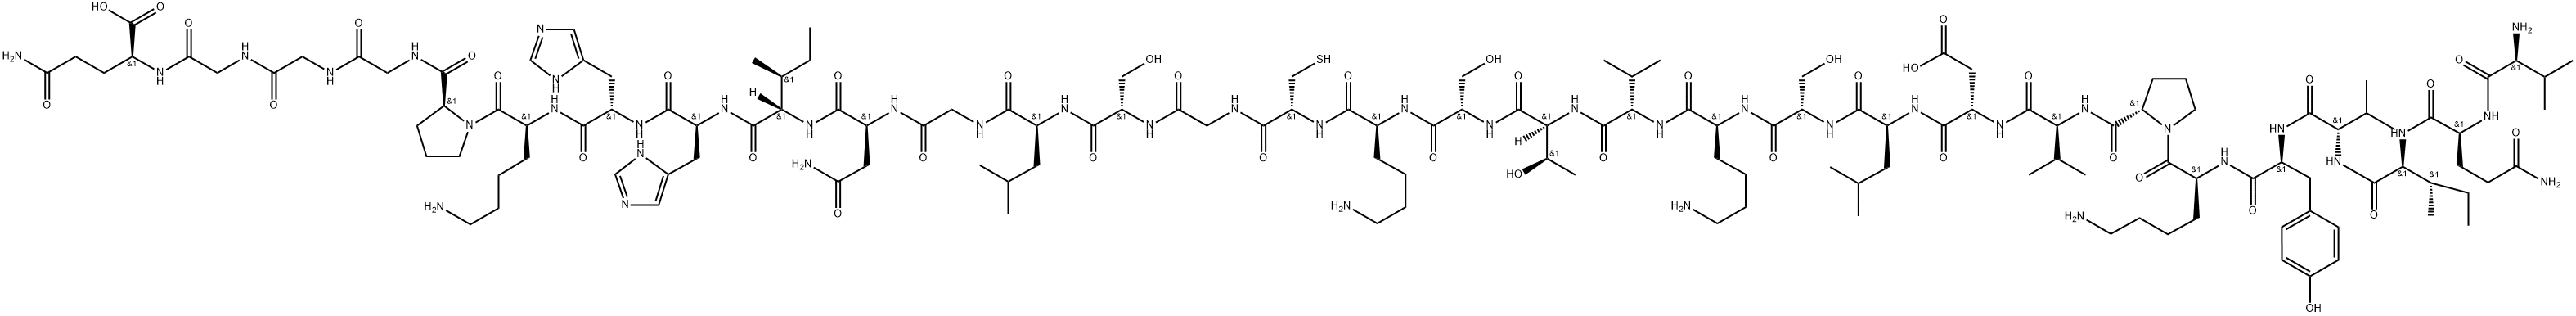 TAU PEPTIDE (306-336) (REPEAT 3 DOMAIN) 结构式